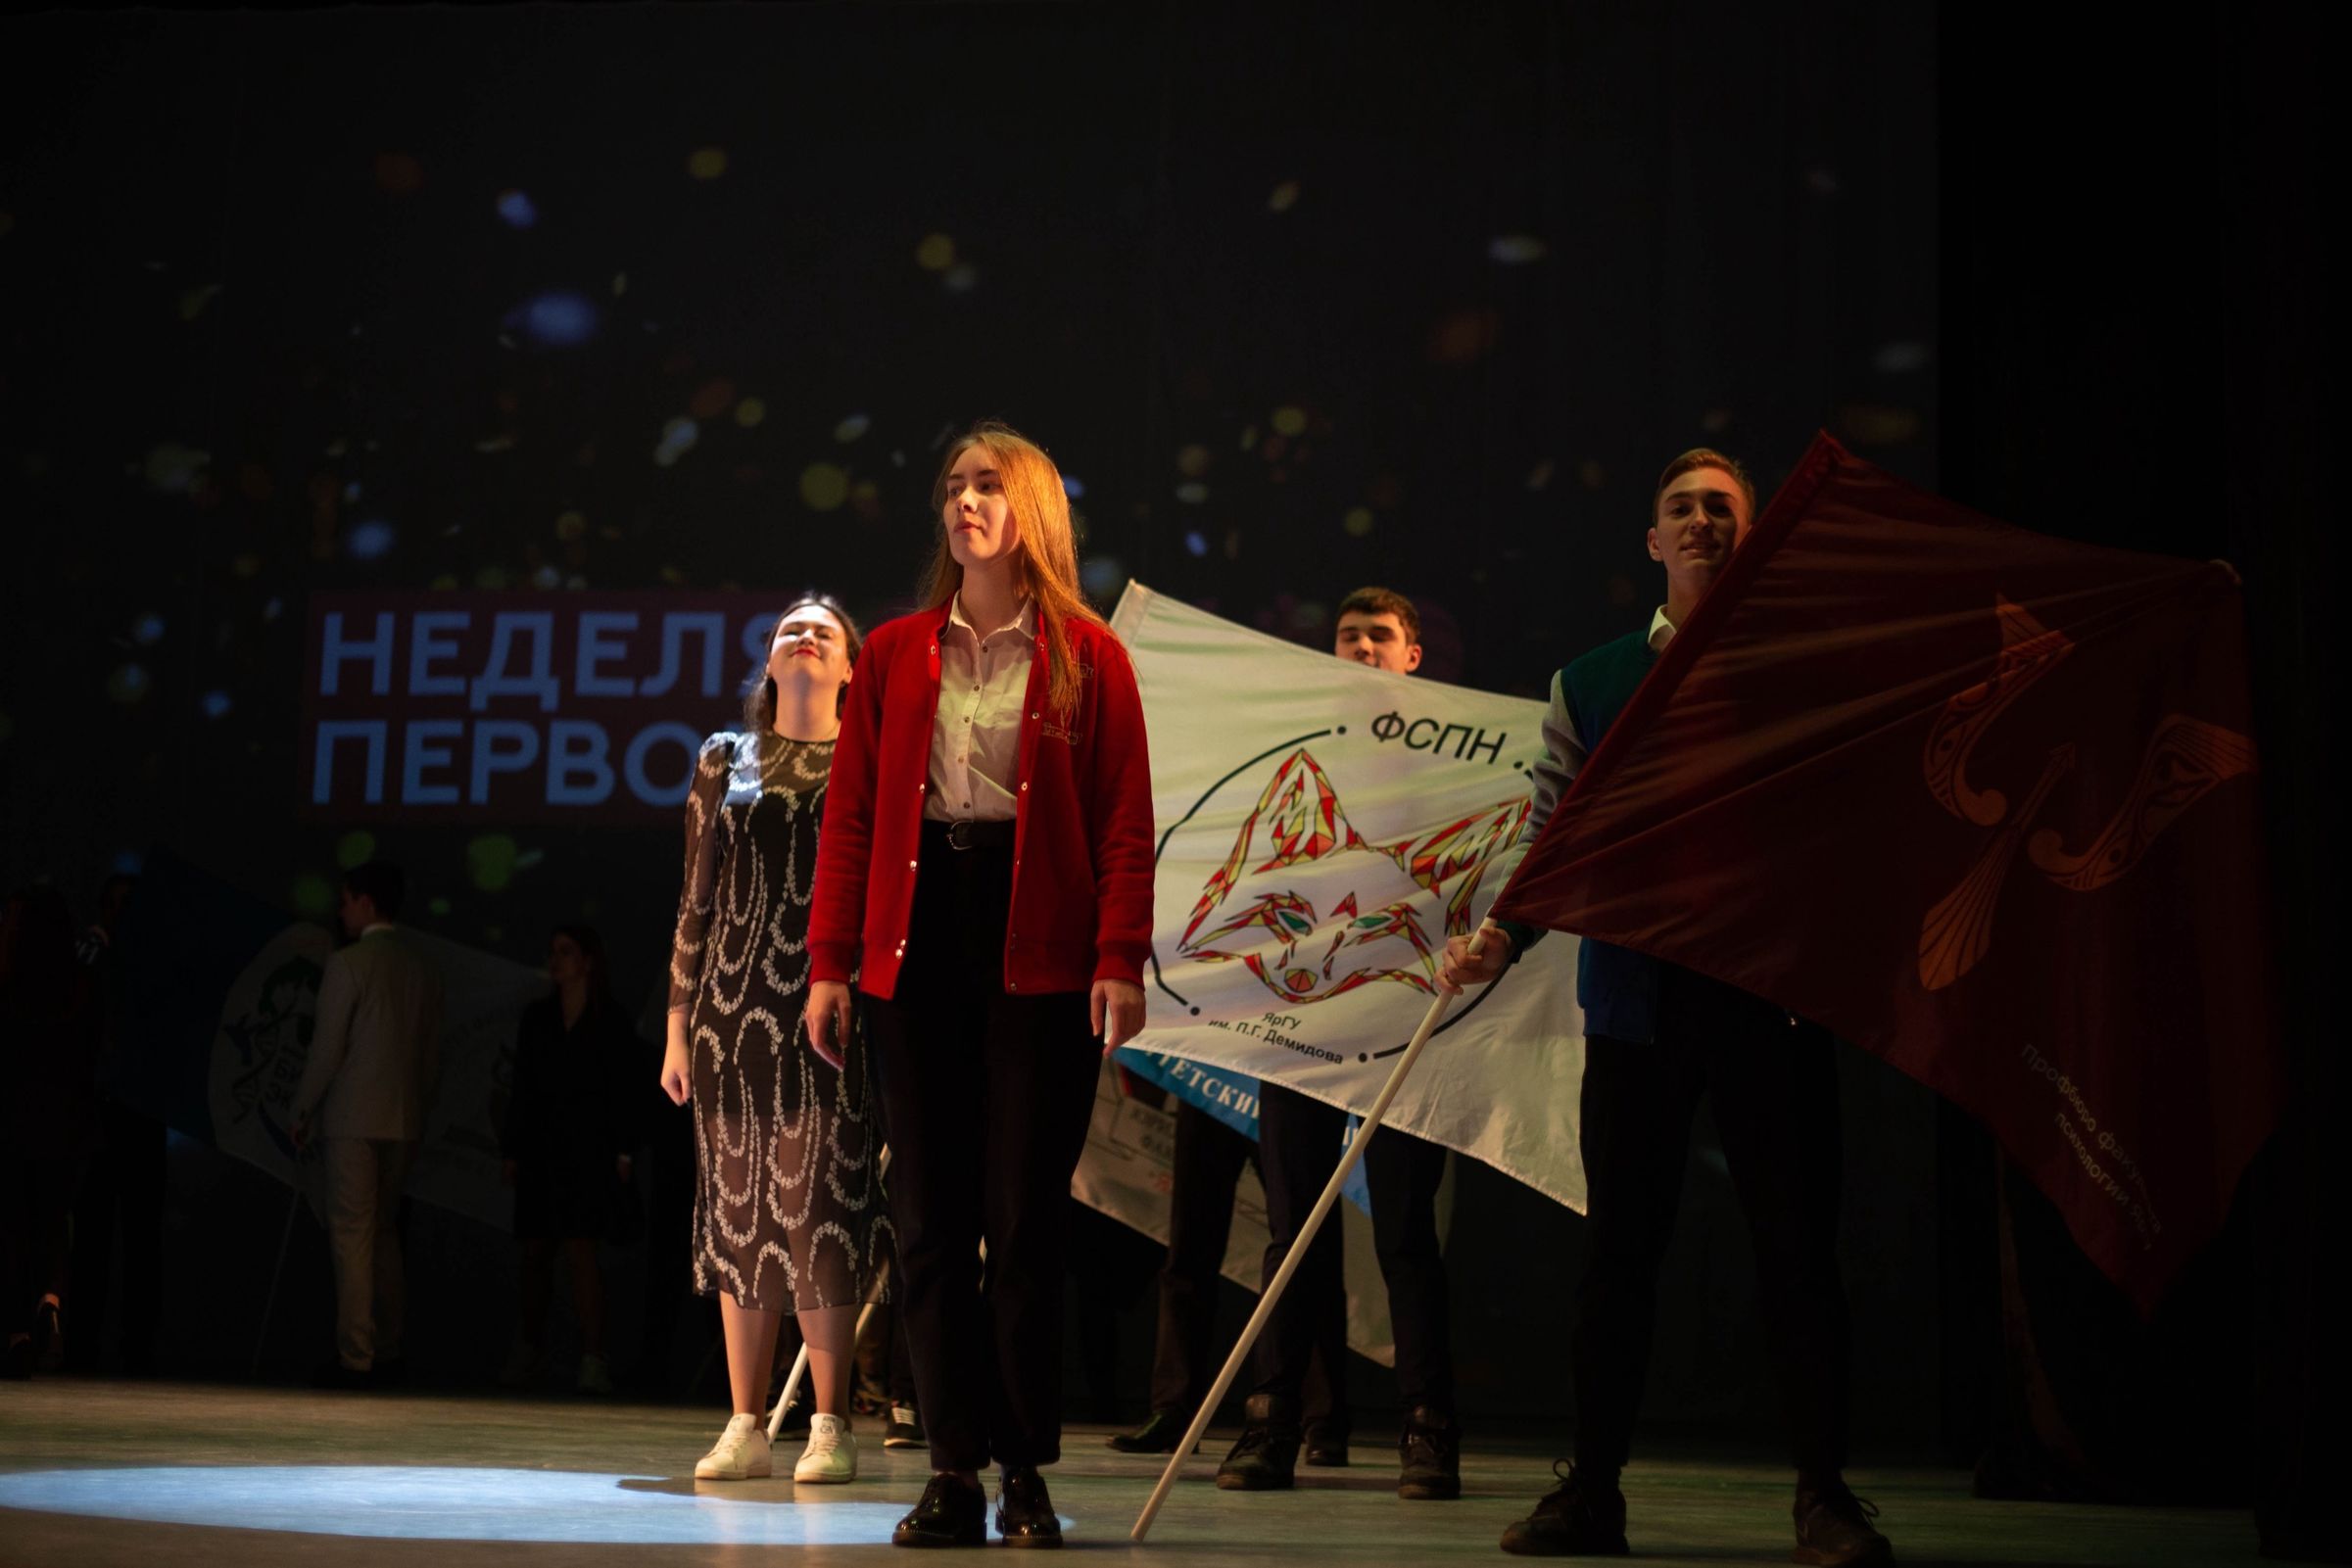 Факультет социально-политических наук Ярославского Демидовского университета занял 1 место в фестивале «Неделя первокурсника»